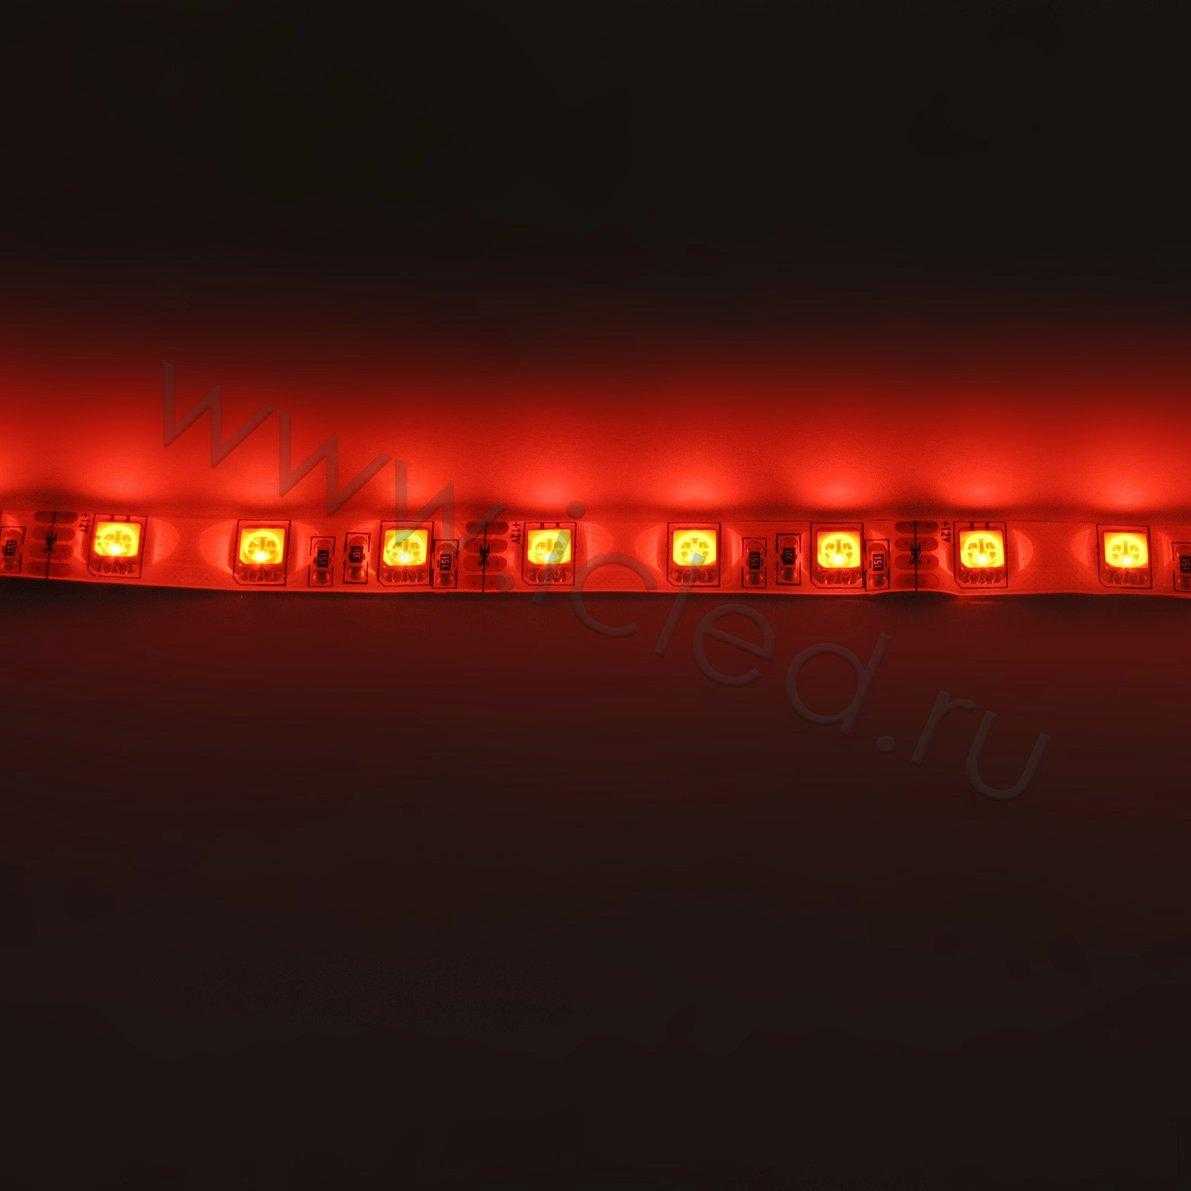 Влагозащищенные светодиодные ленты Светодиодная лента Standart PRO class,, 5050, 60 led/m, RGB, 12V, IP65 Icled